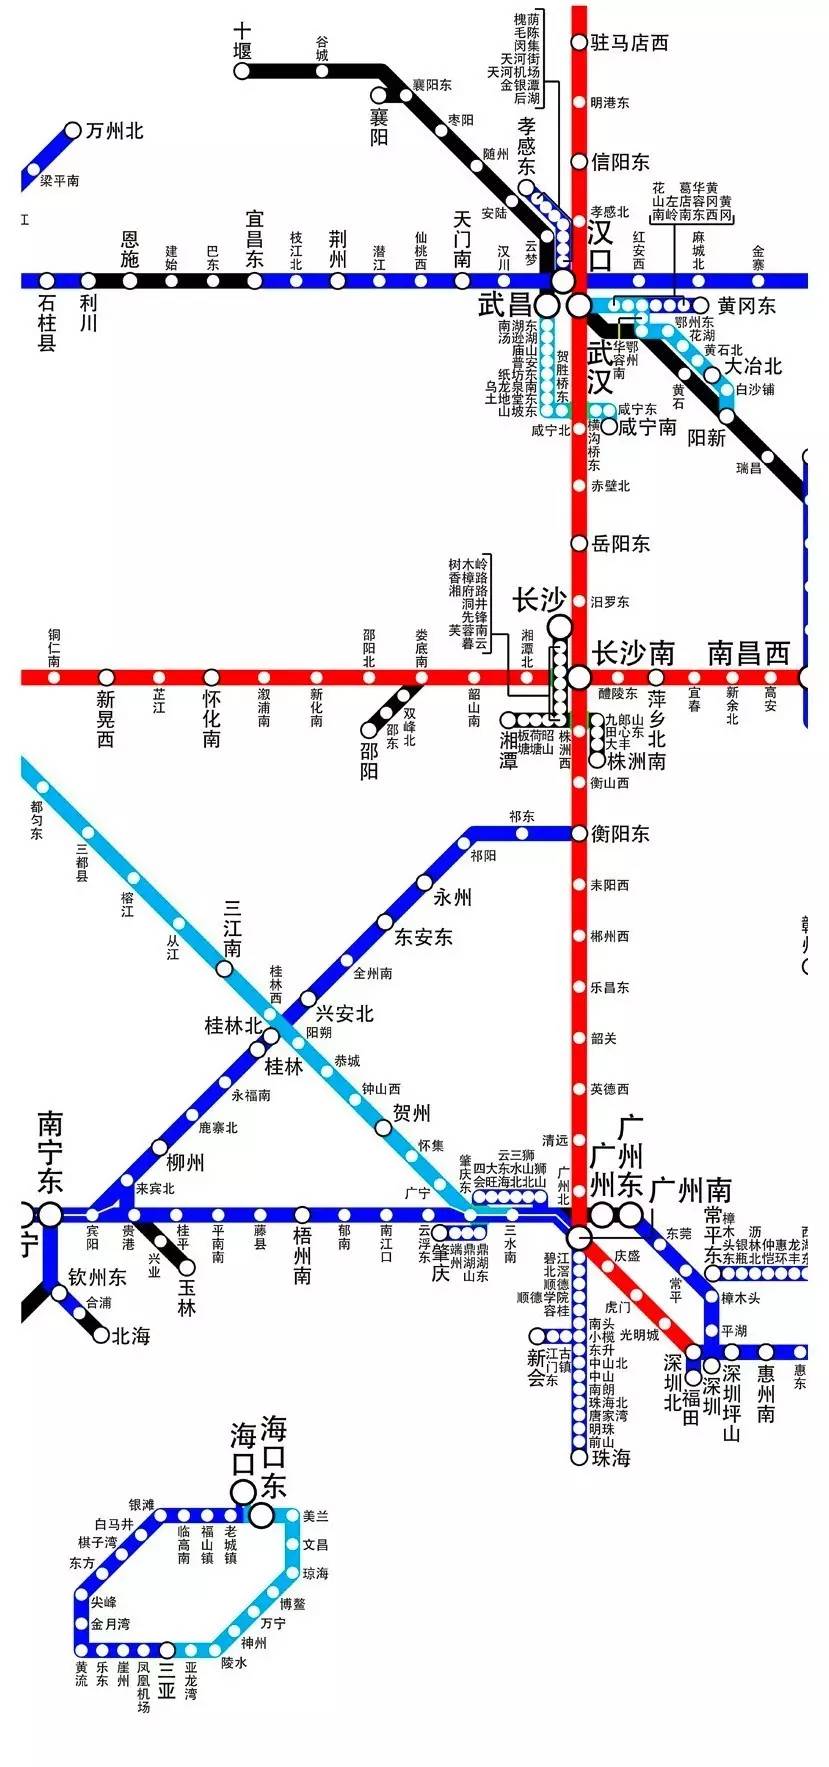 中国高铁线路图放大图片